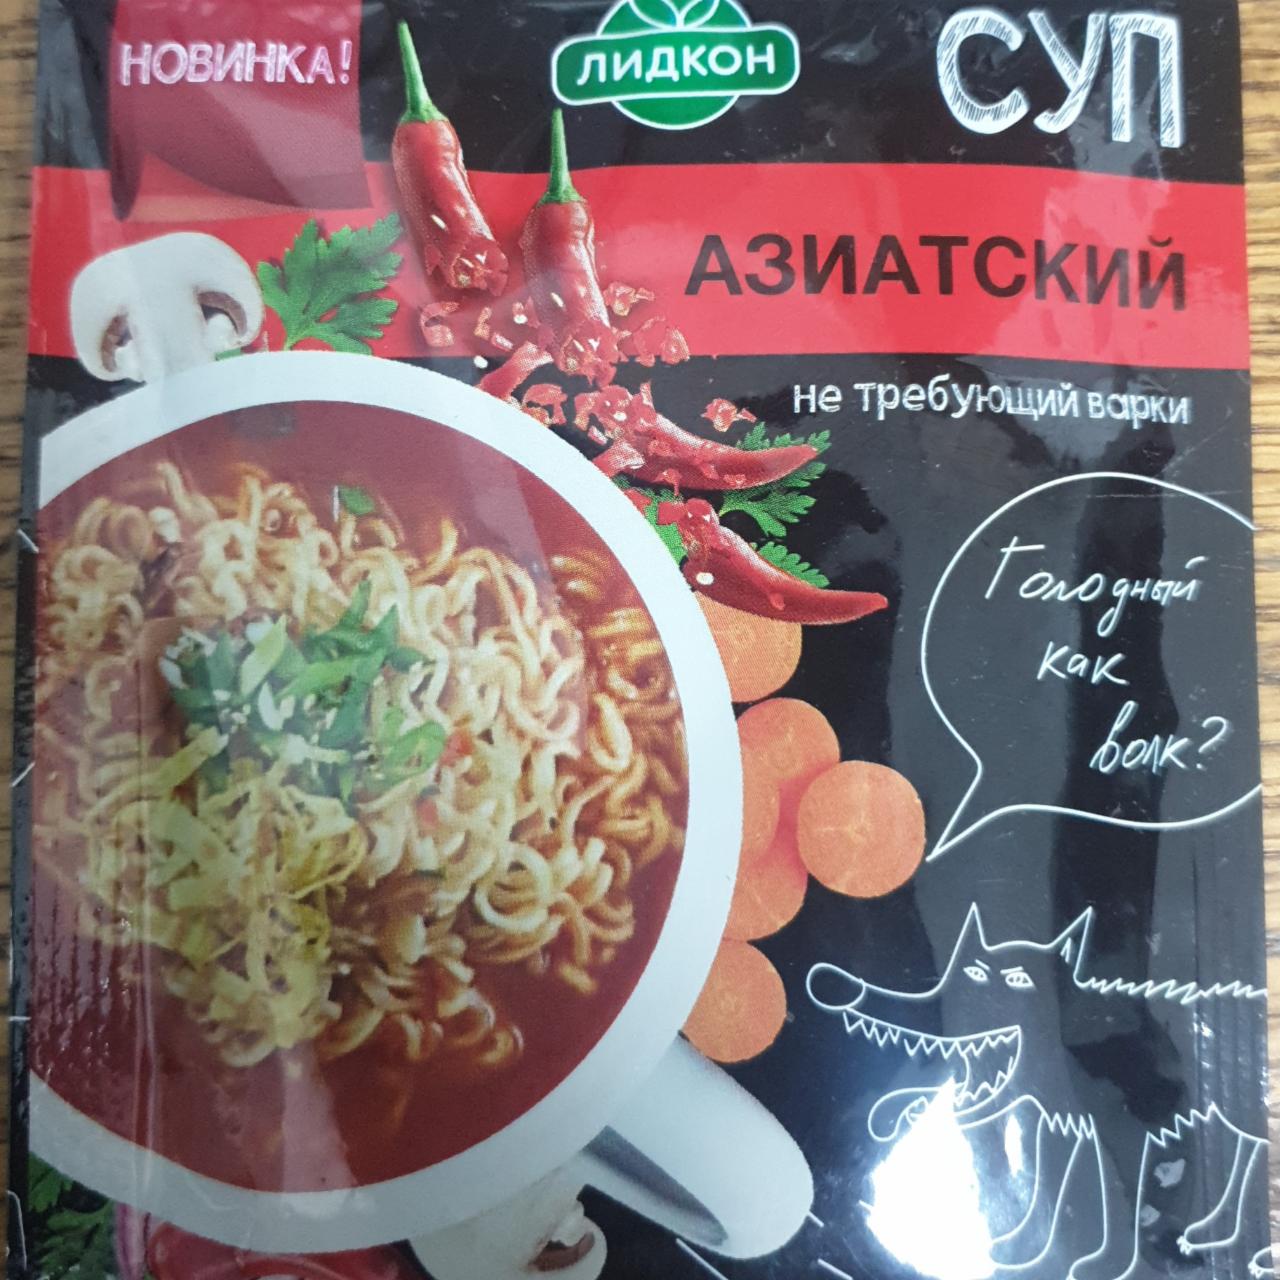 Фото - Азиатский Суп быстрого приготовления Лидкон